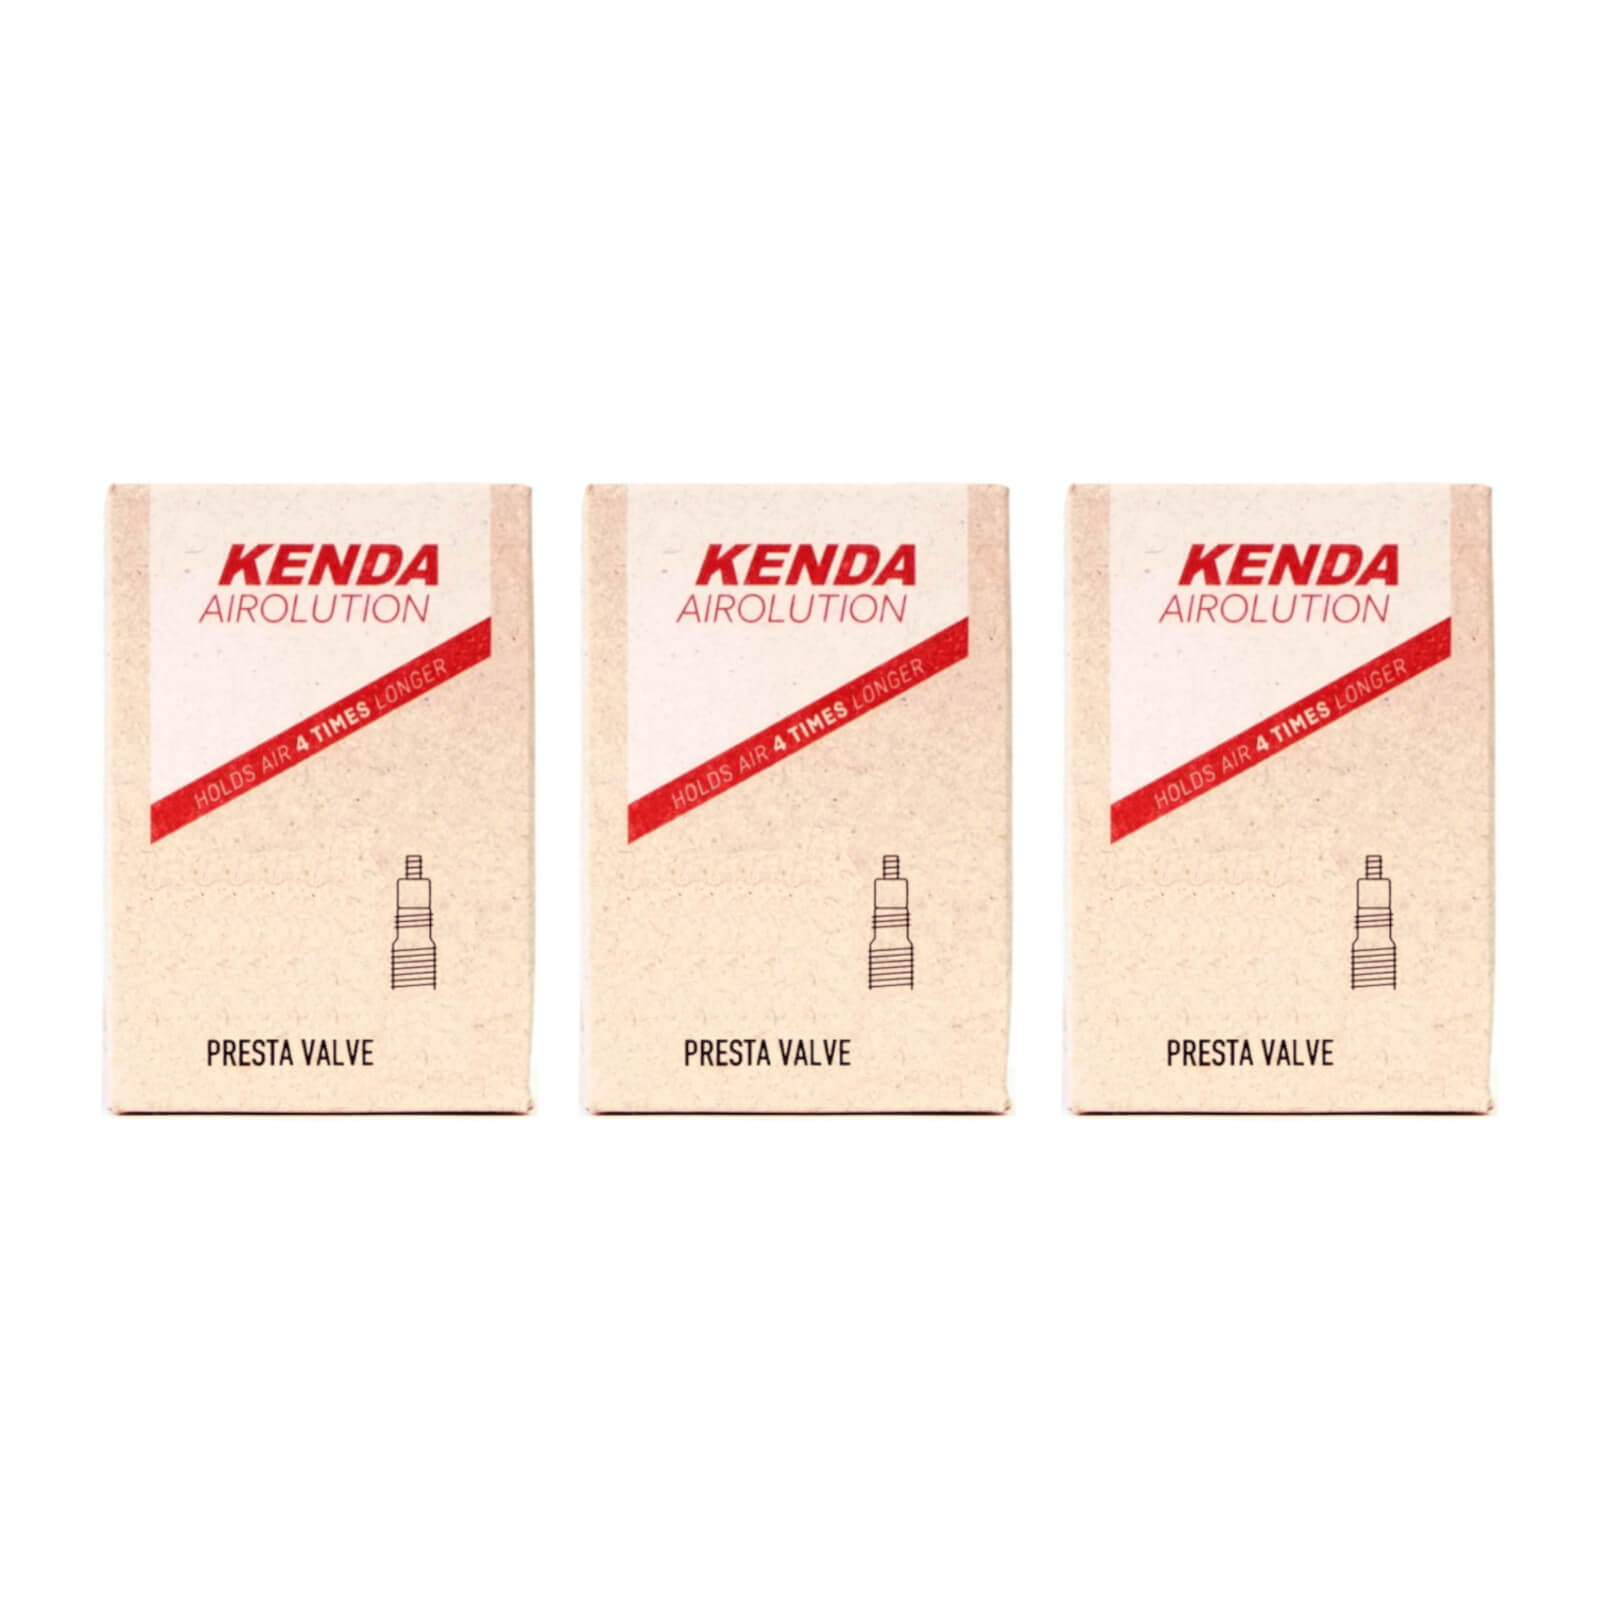 Kenda Airolution 29x2.4-2.8" 29 Inch Presta Valve Bike Inner Tube Pack of 3